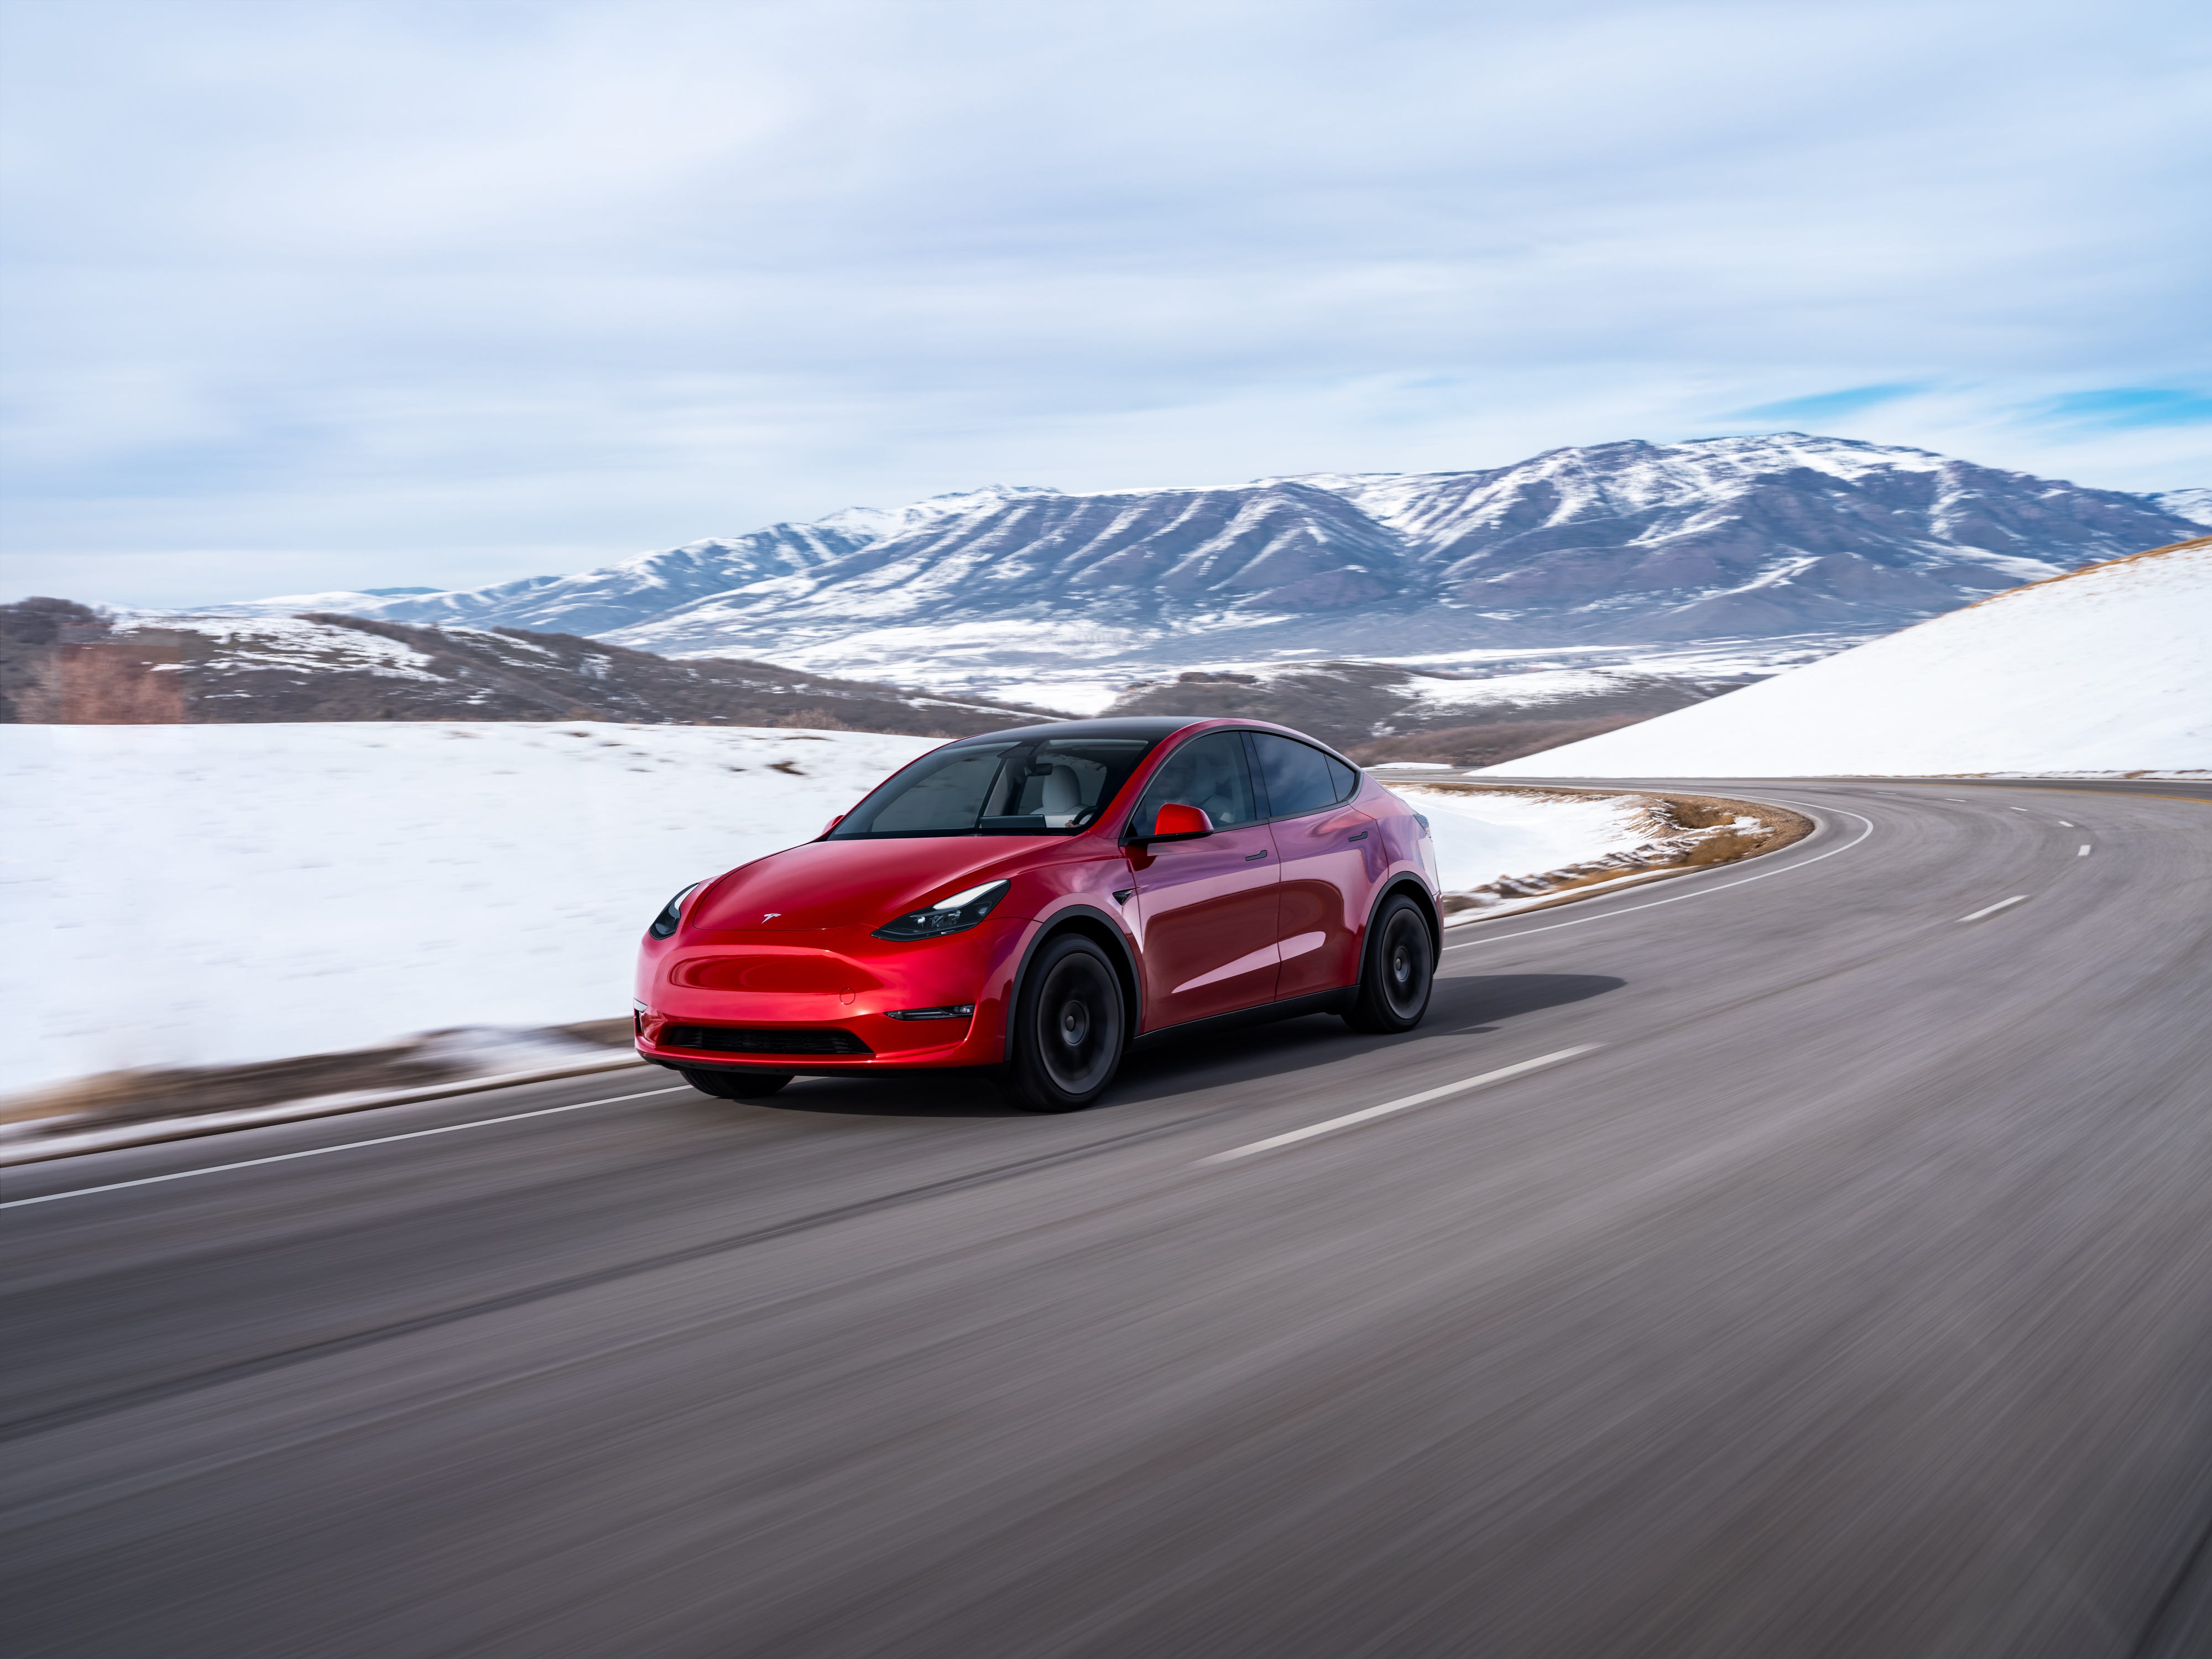 Un SUV Tesla Model Y rosso percorre una strada con neve e montagne sullo sfondo.